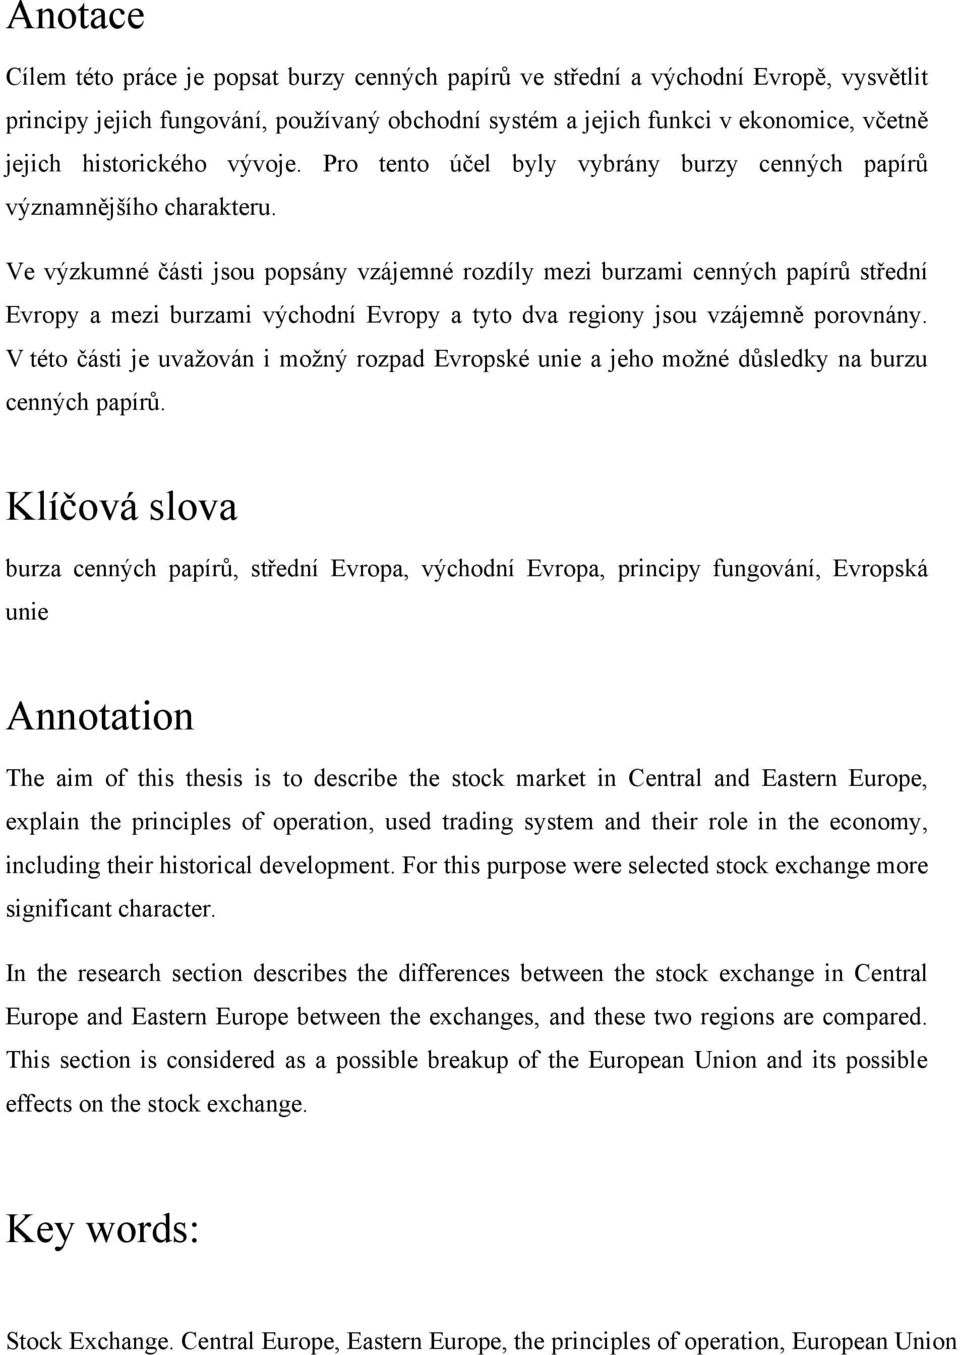 Burzy cenných papírů ve střední a východní Evropě - PDF Free Download